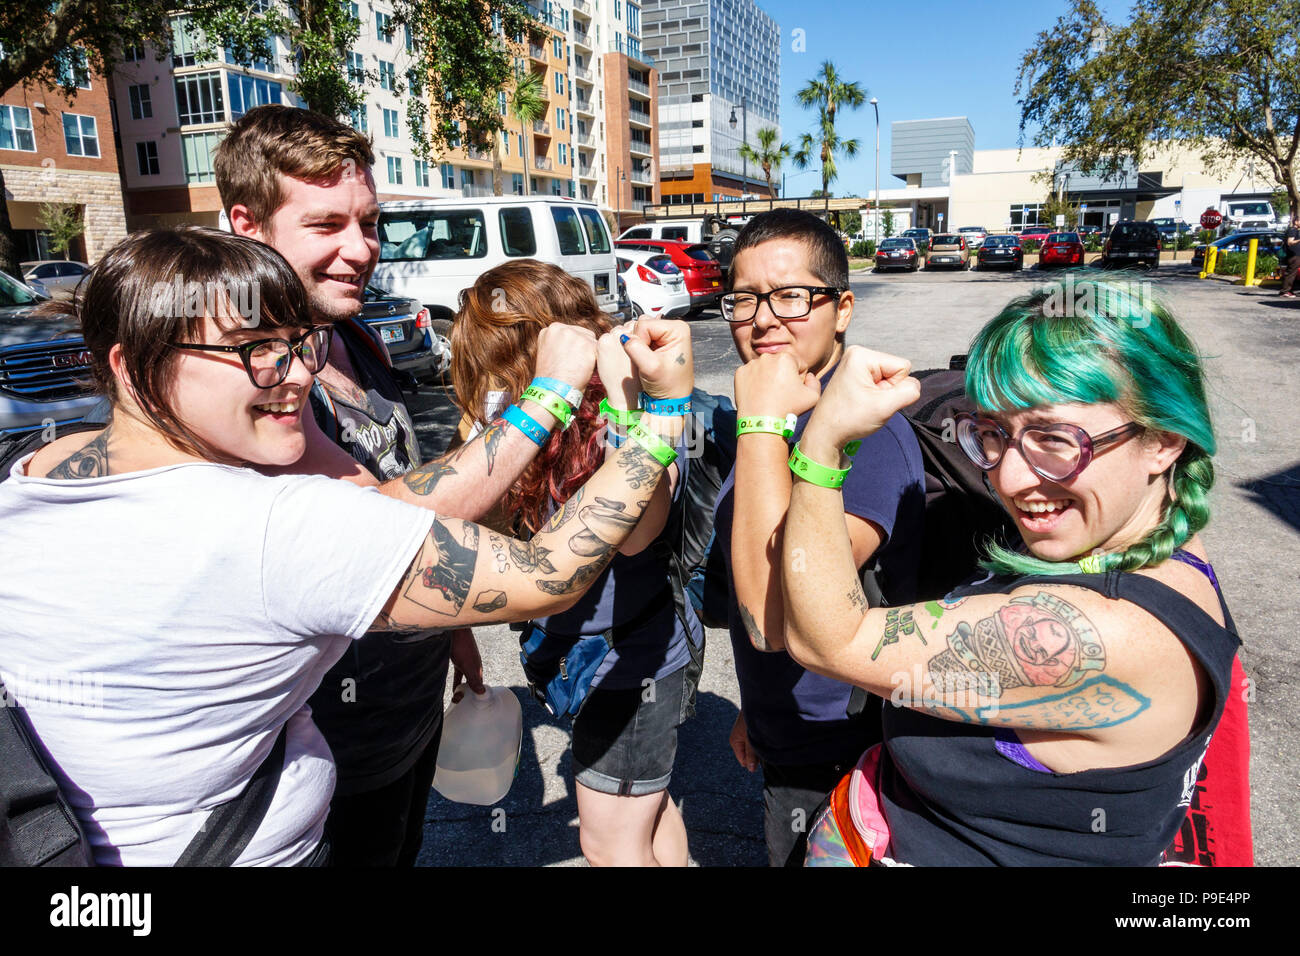 Gainesville Florida, das Fest jährliche Musikfestival, Armbänder, Fans, Mann Männer männlich, Frau weibliche Frauen, College-Stadt, Studenten, Tattoos, feiern, grüne Farbe Stockfoto